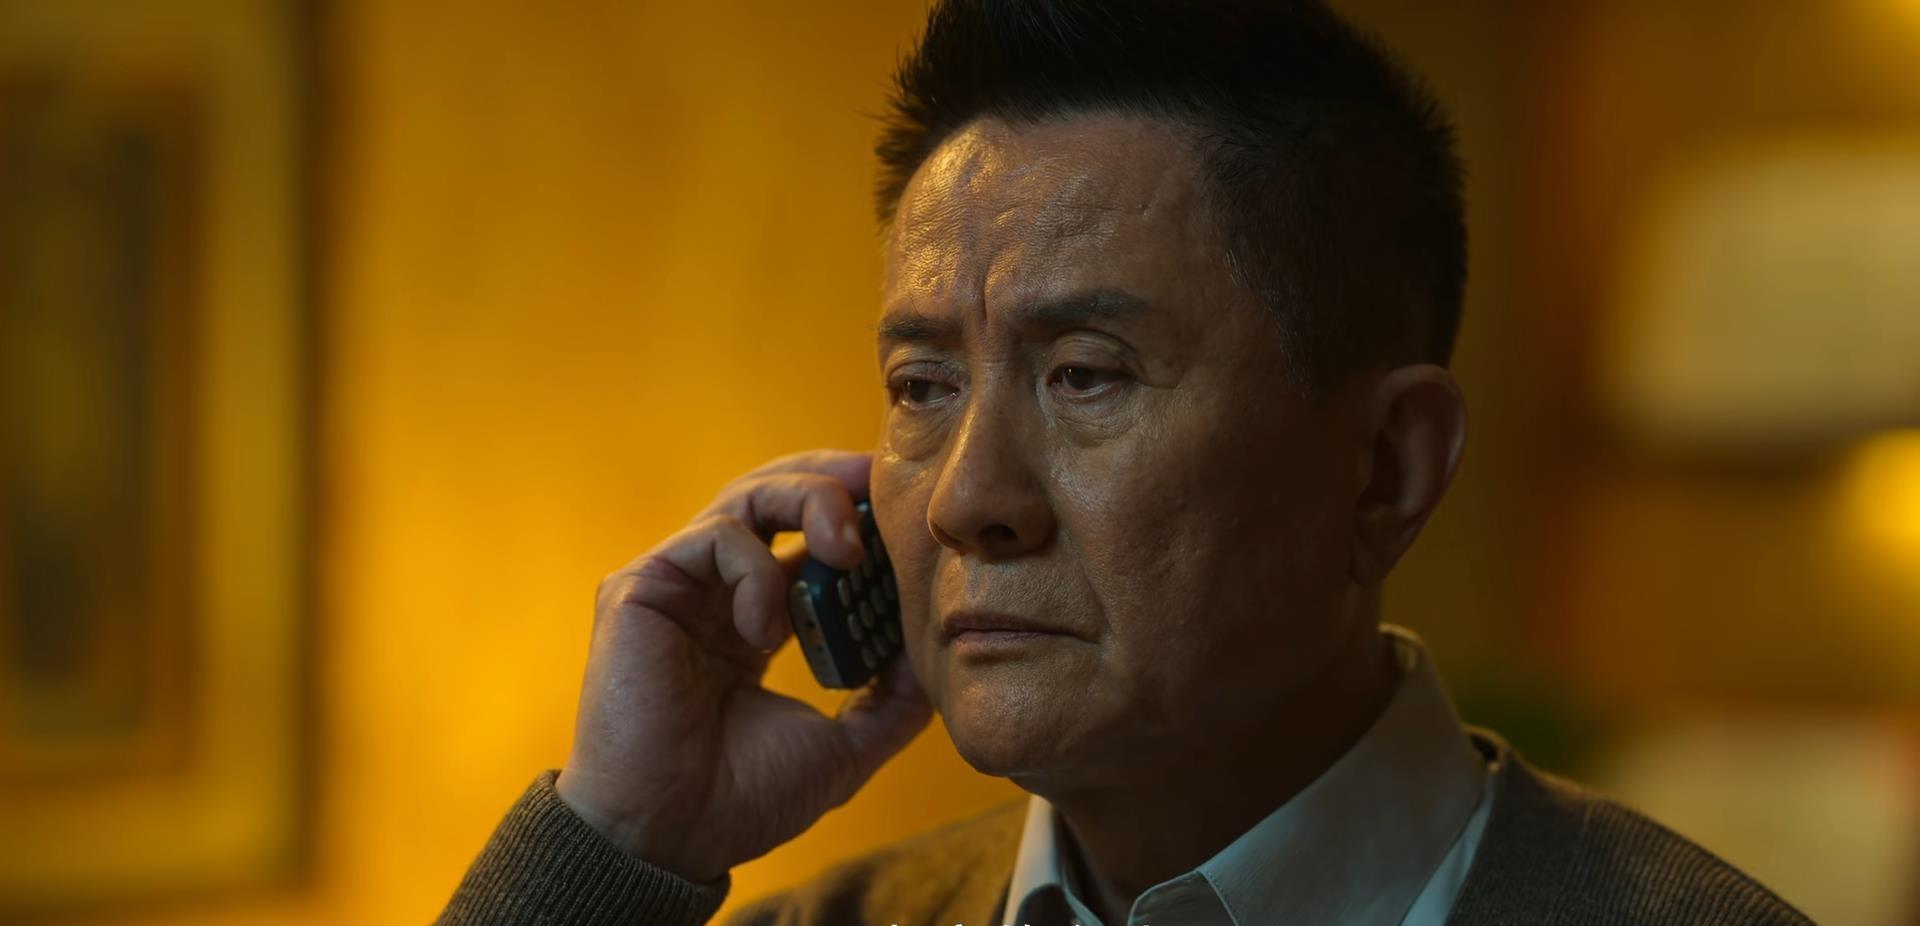 而在《狂飙》里,张志坚同样把京海市公安局这样一个角色饰演得很到位